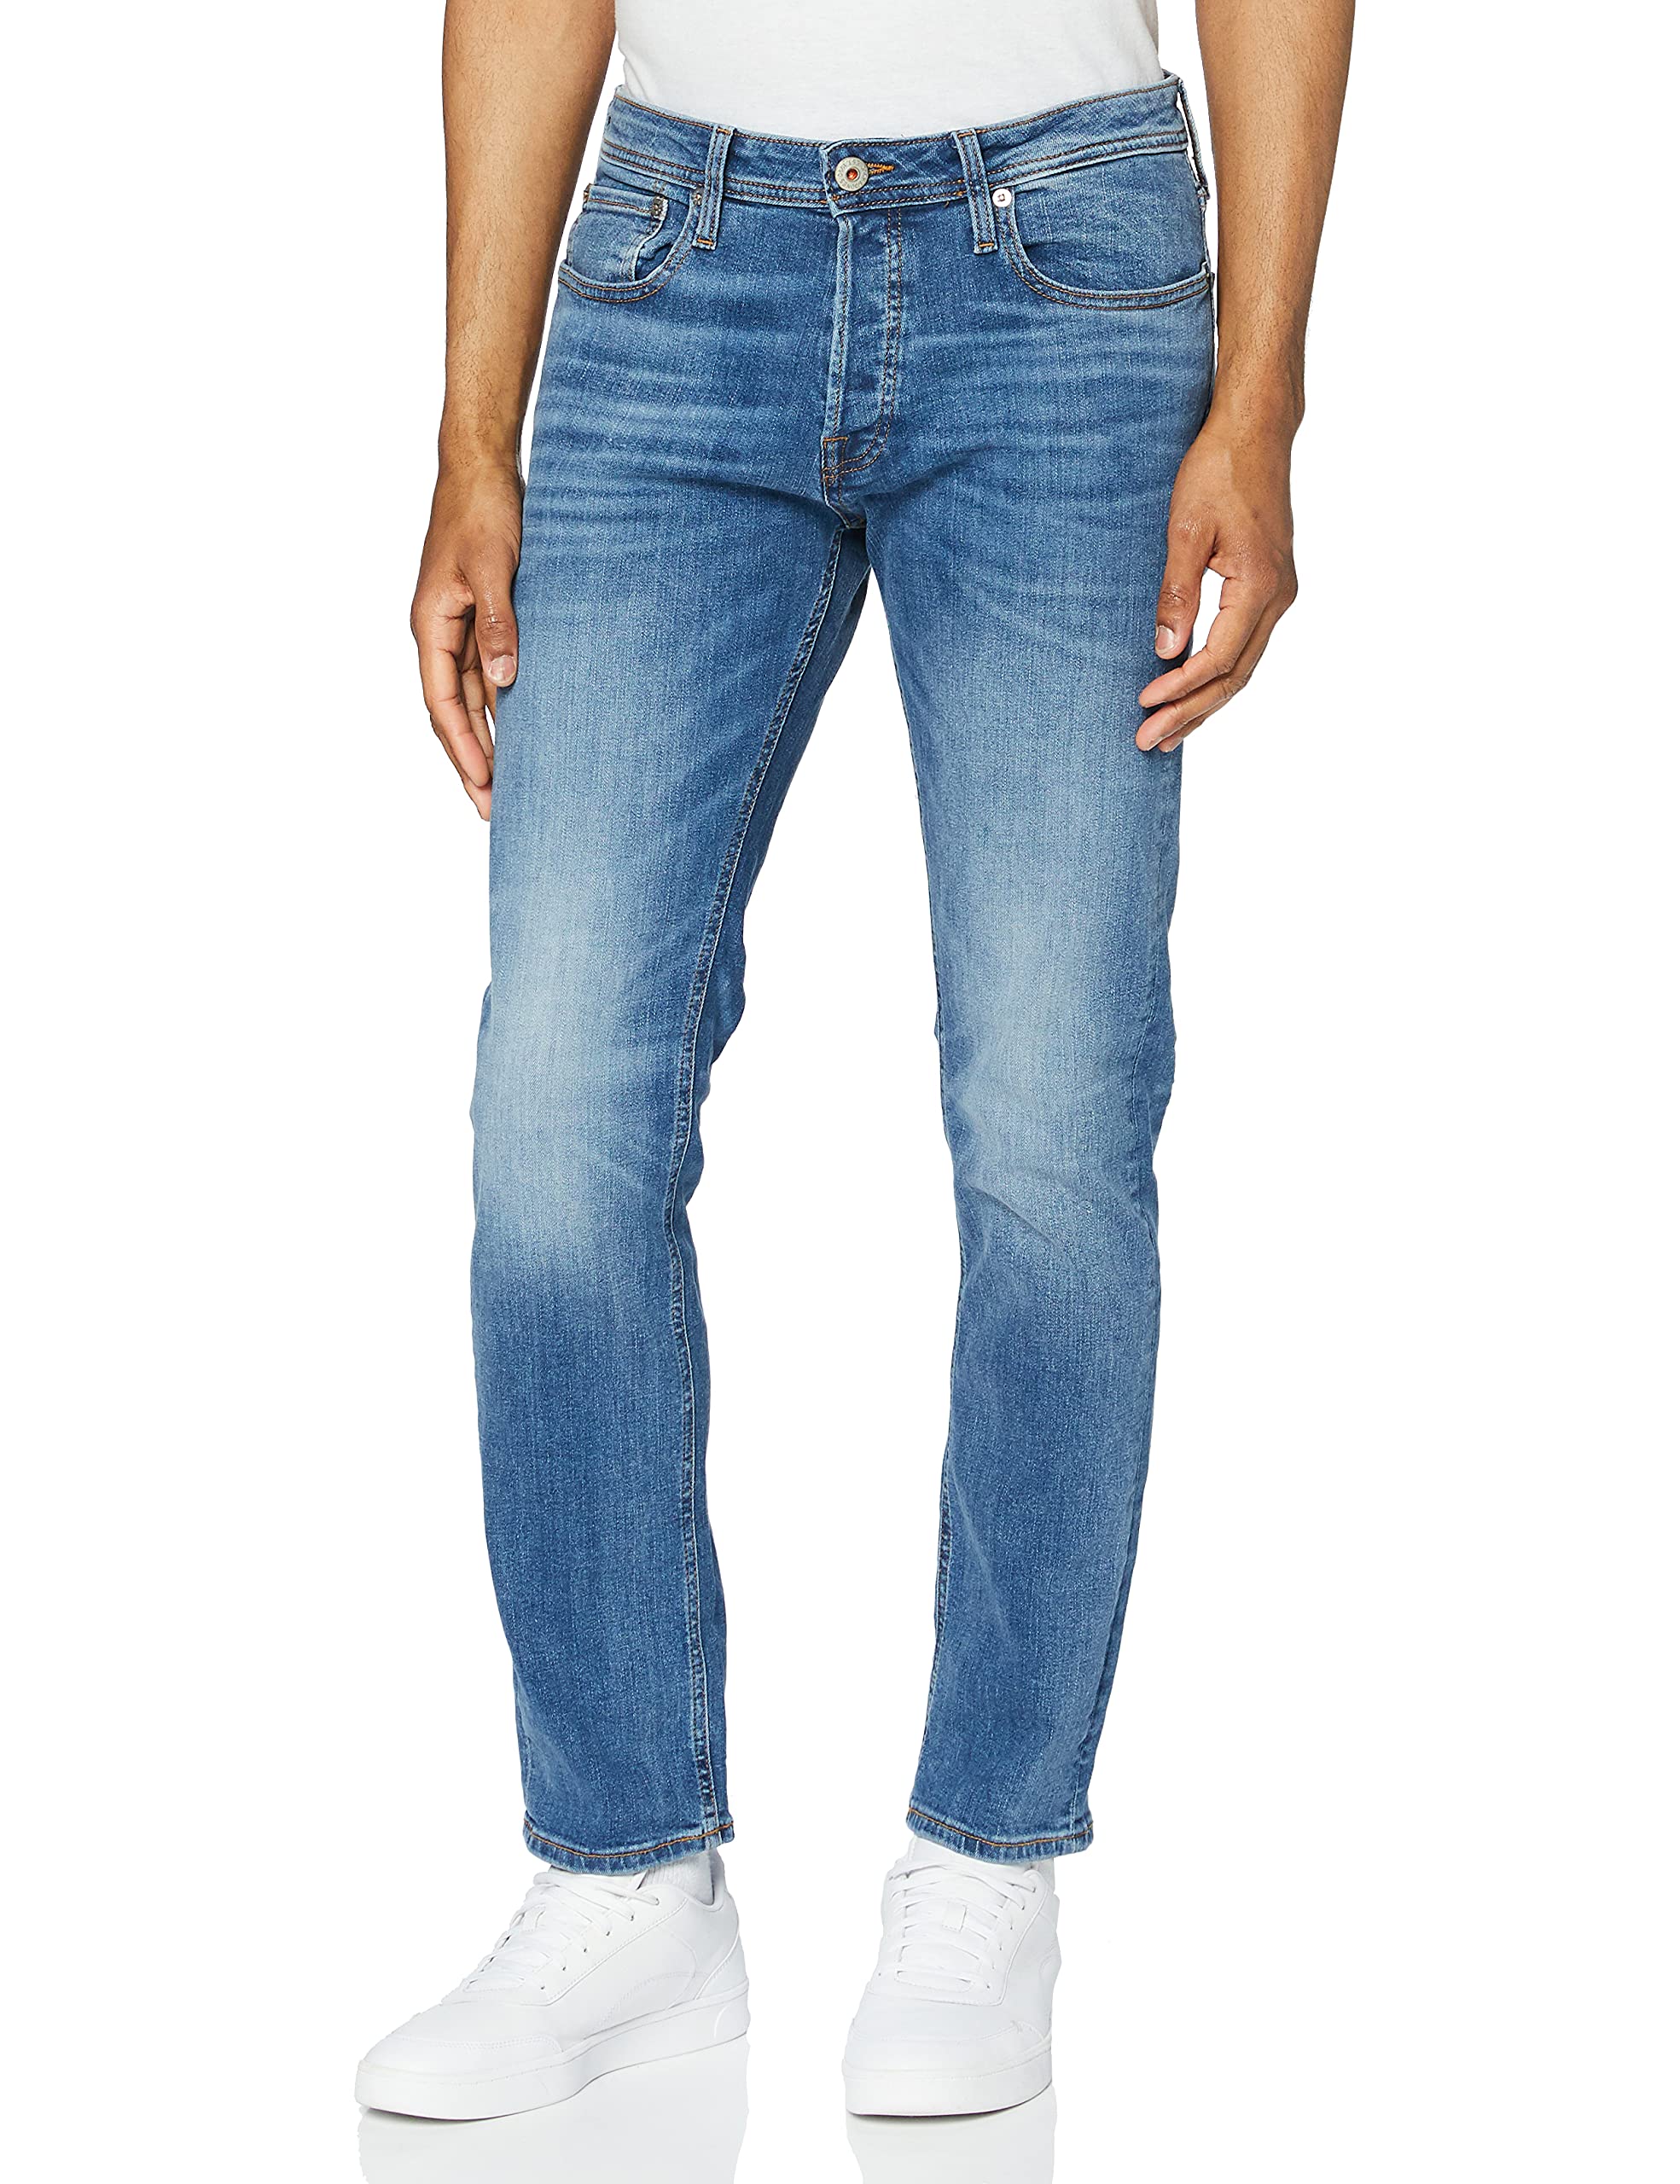 Herren Jack & Jones Jeans Tim Straight Legs Slim Fit Flat Front Tim ORIGINAL, Farben:Blau-2, Größe Jeans:33W / 32L